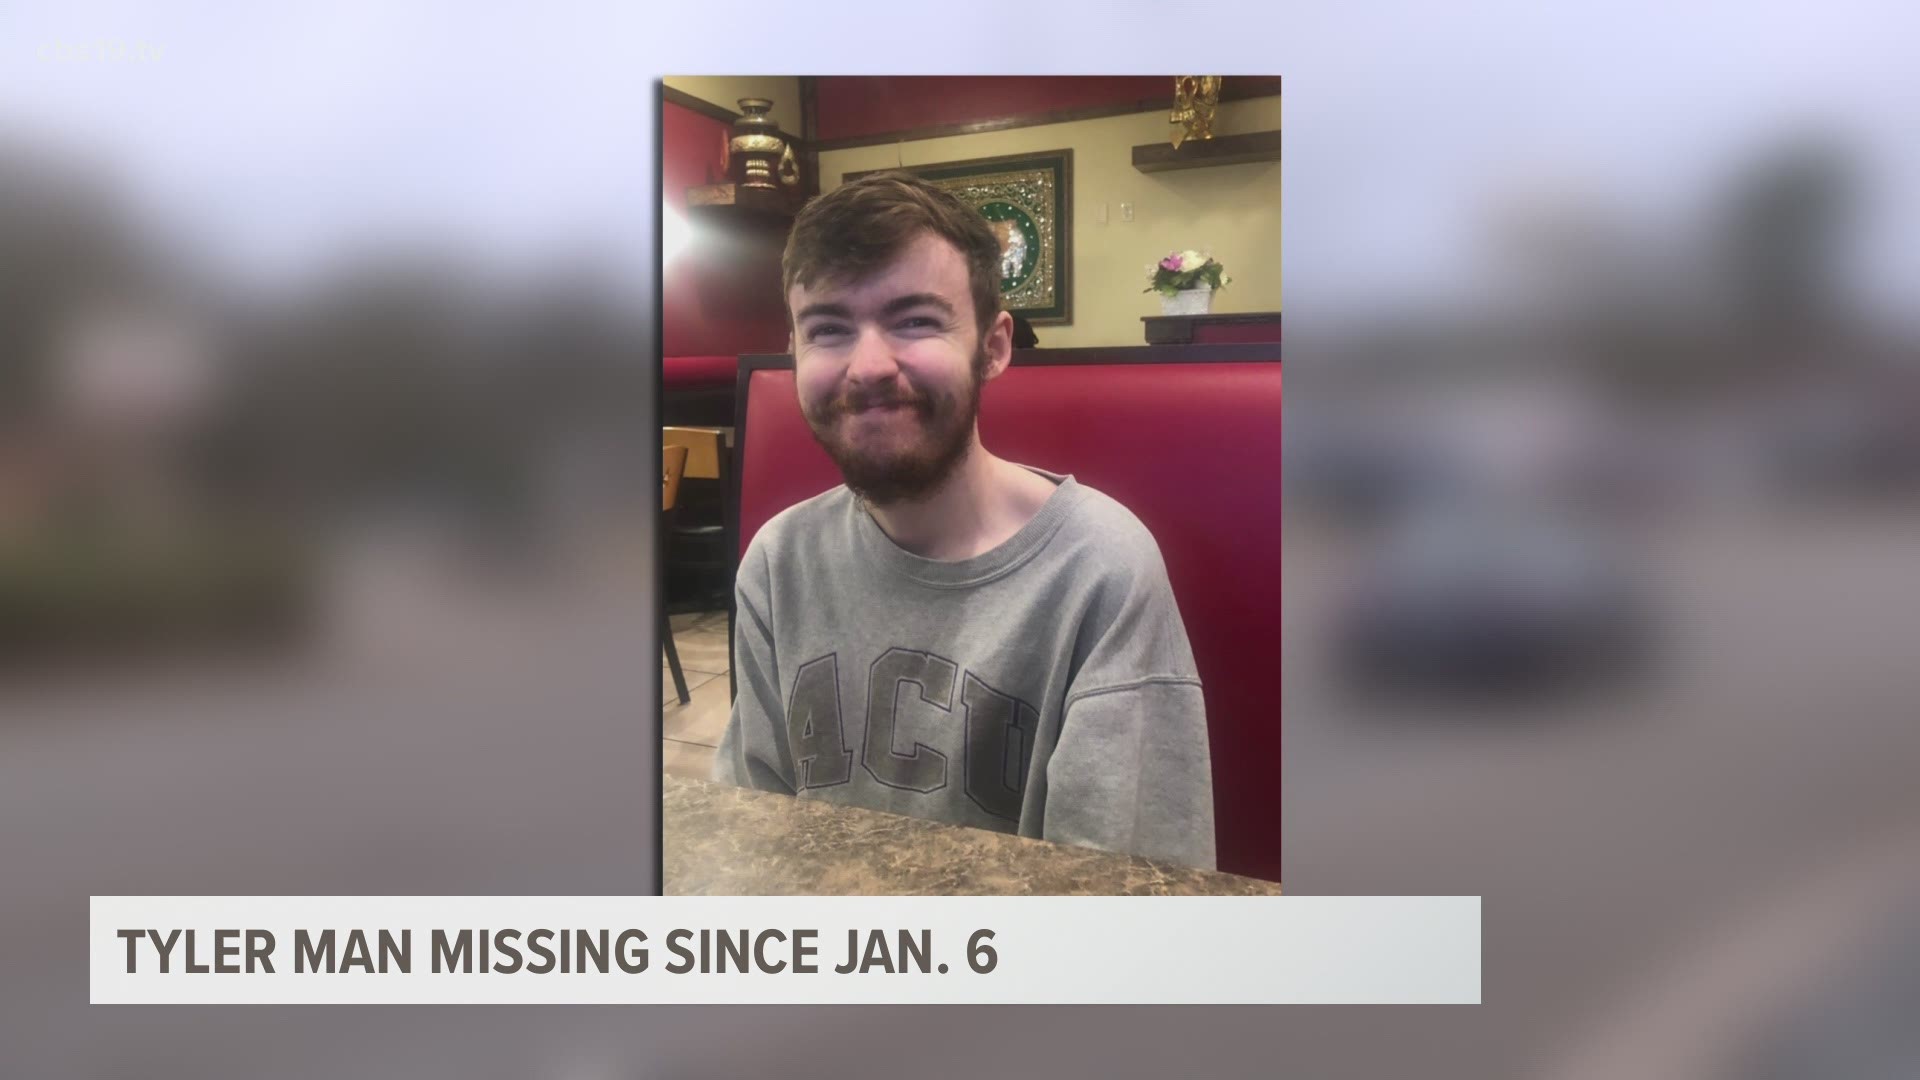 Corbin Stiefer was last seen on Jan. 6 in Tyler.